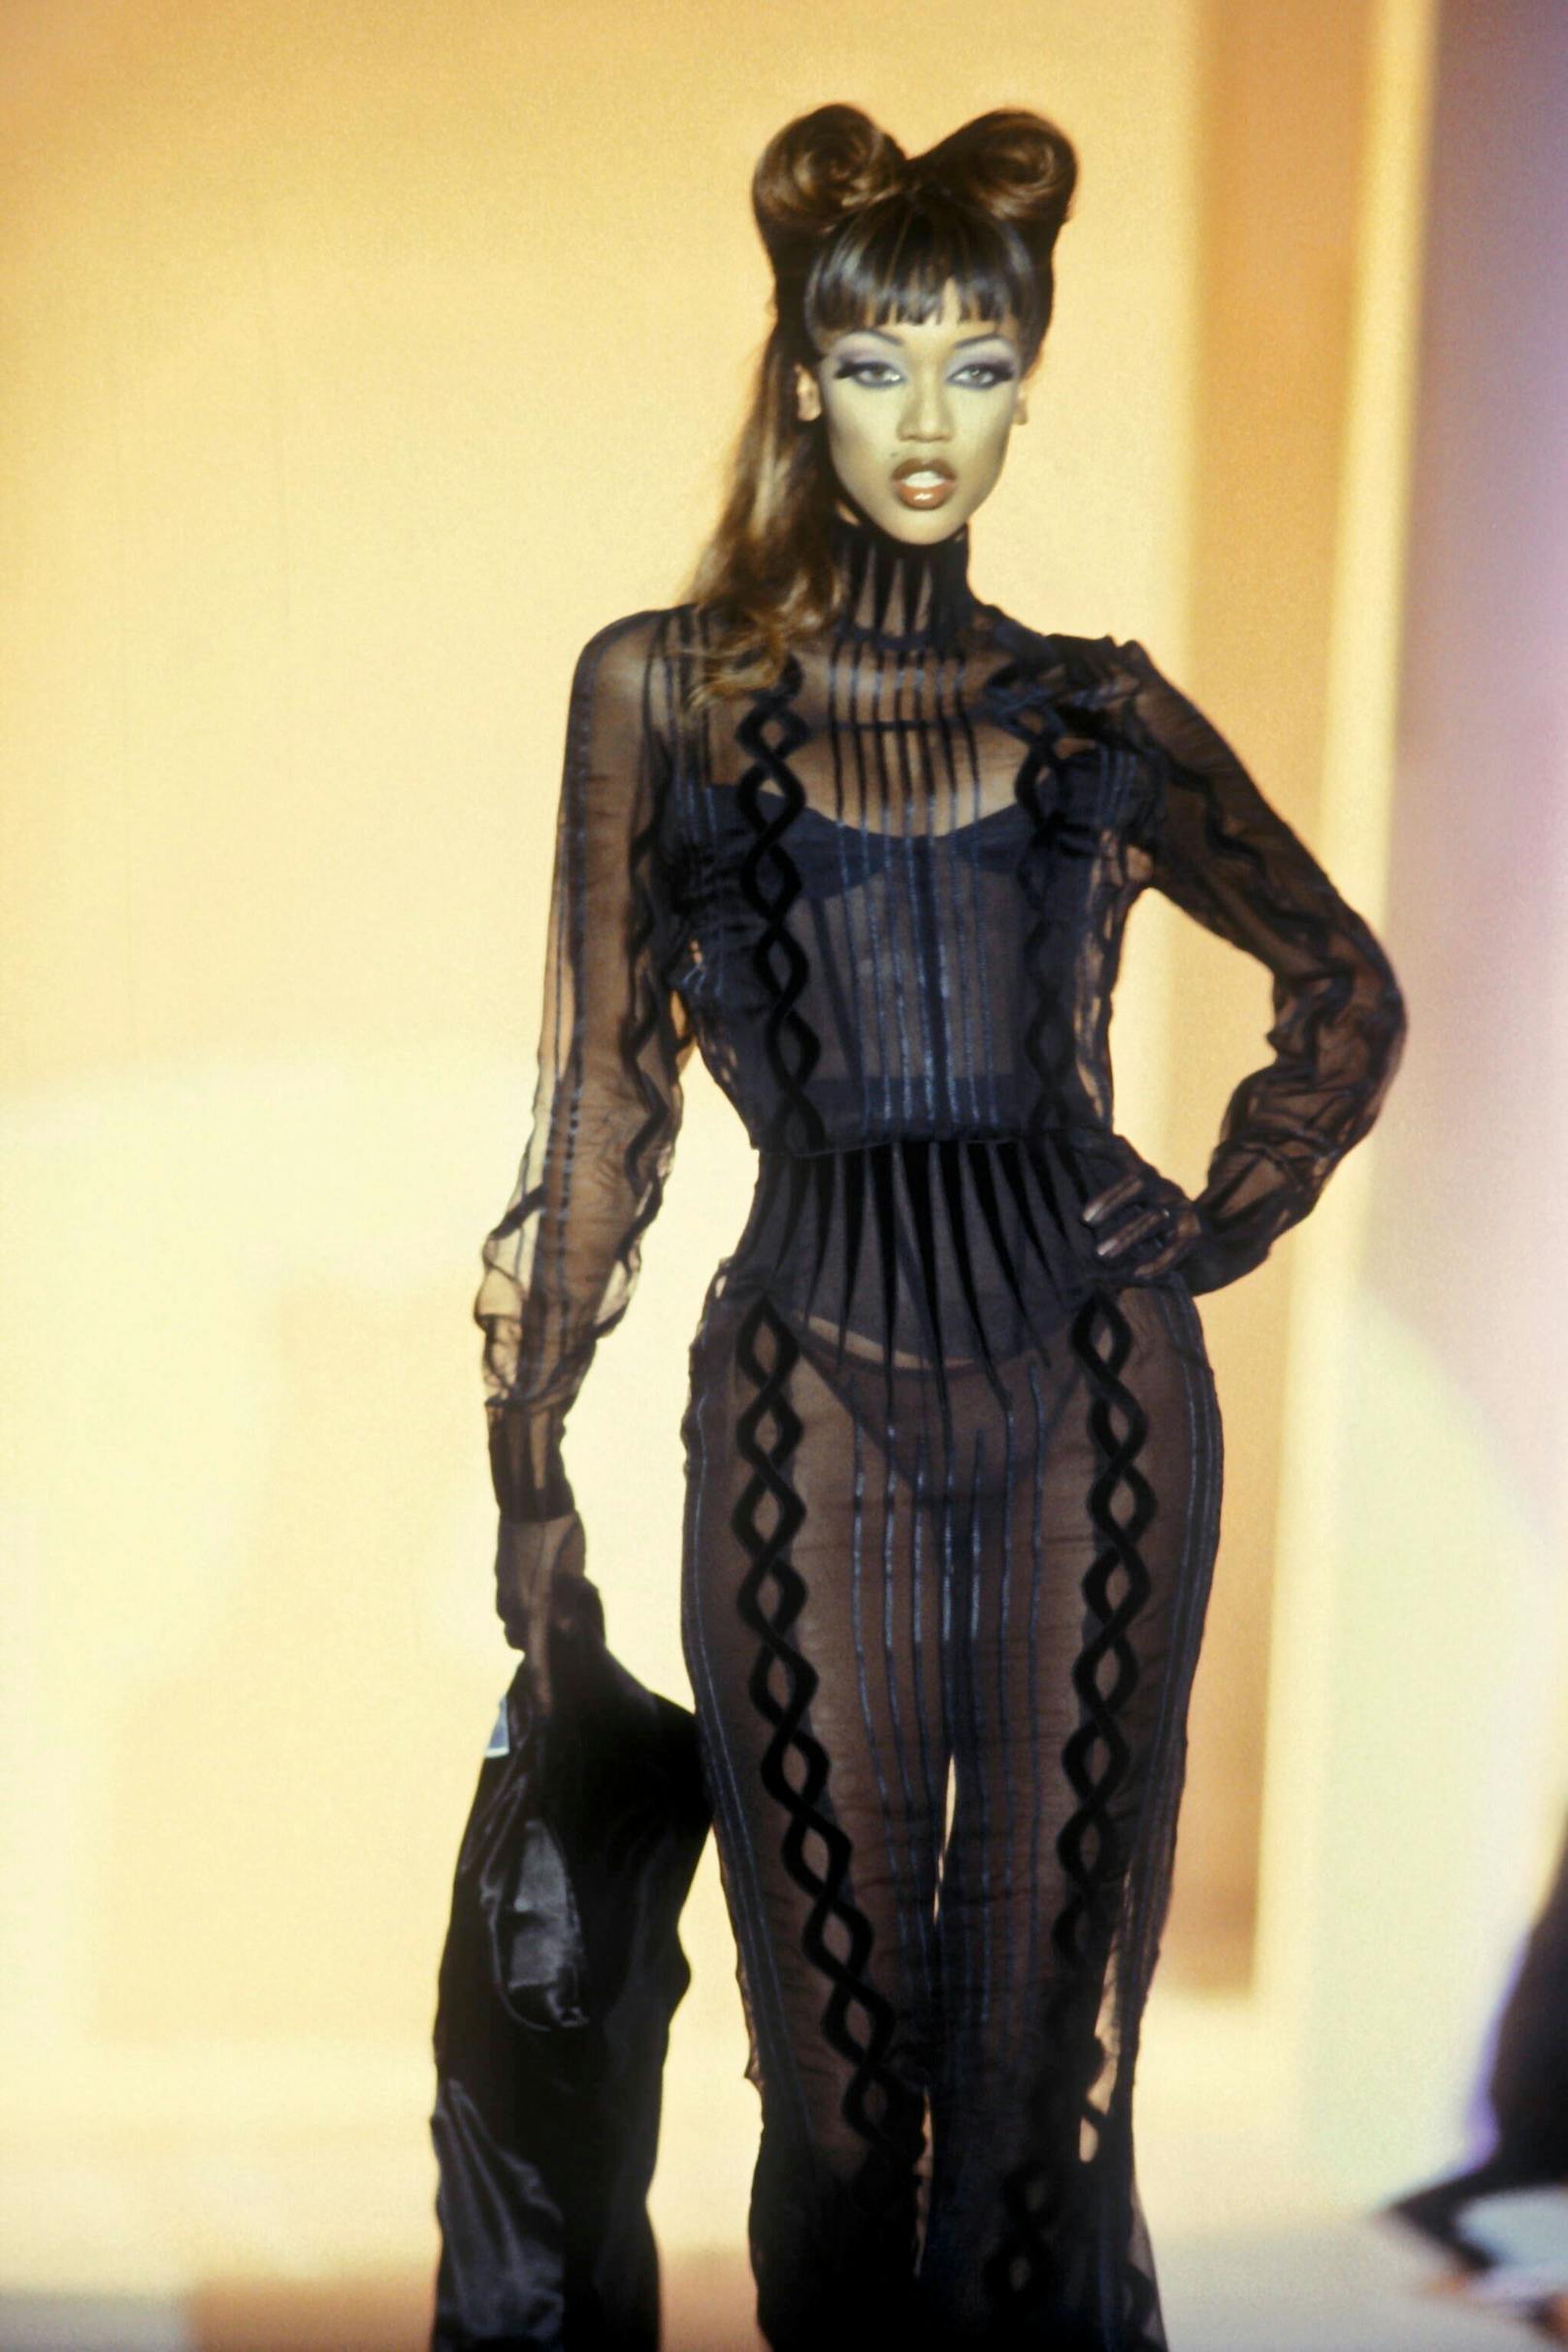 Die Betonung der Taille war die Spezialität von Thierry Mugler. Sein Haute Couture Atelier in Paris schuf unglaubliche Modelle, die bis heute bei Sammlern oder in Museen hängen.